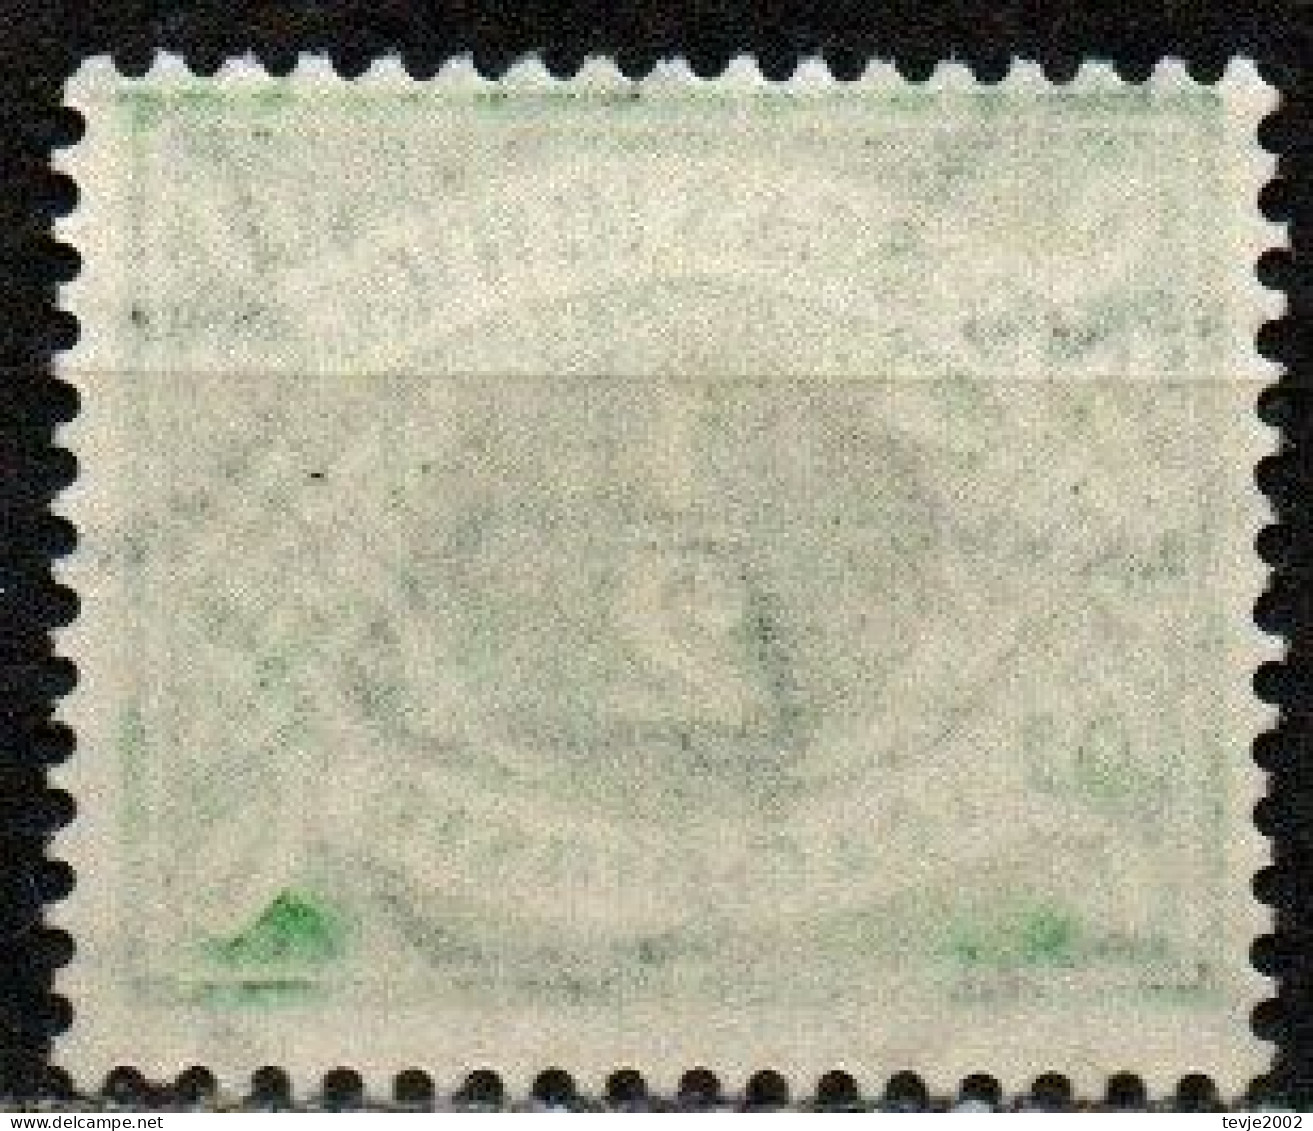 Irland Eire 1942 - Portomarke Mi.Nr. 5 - Postfrisch MNH - Impuestos